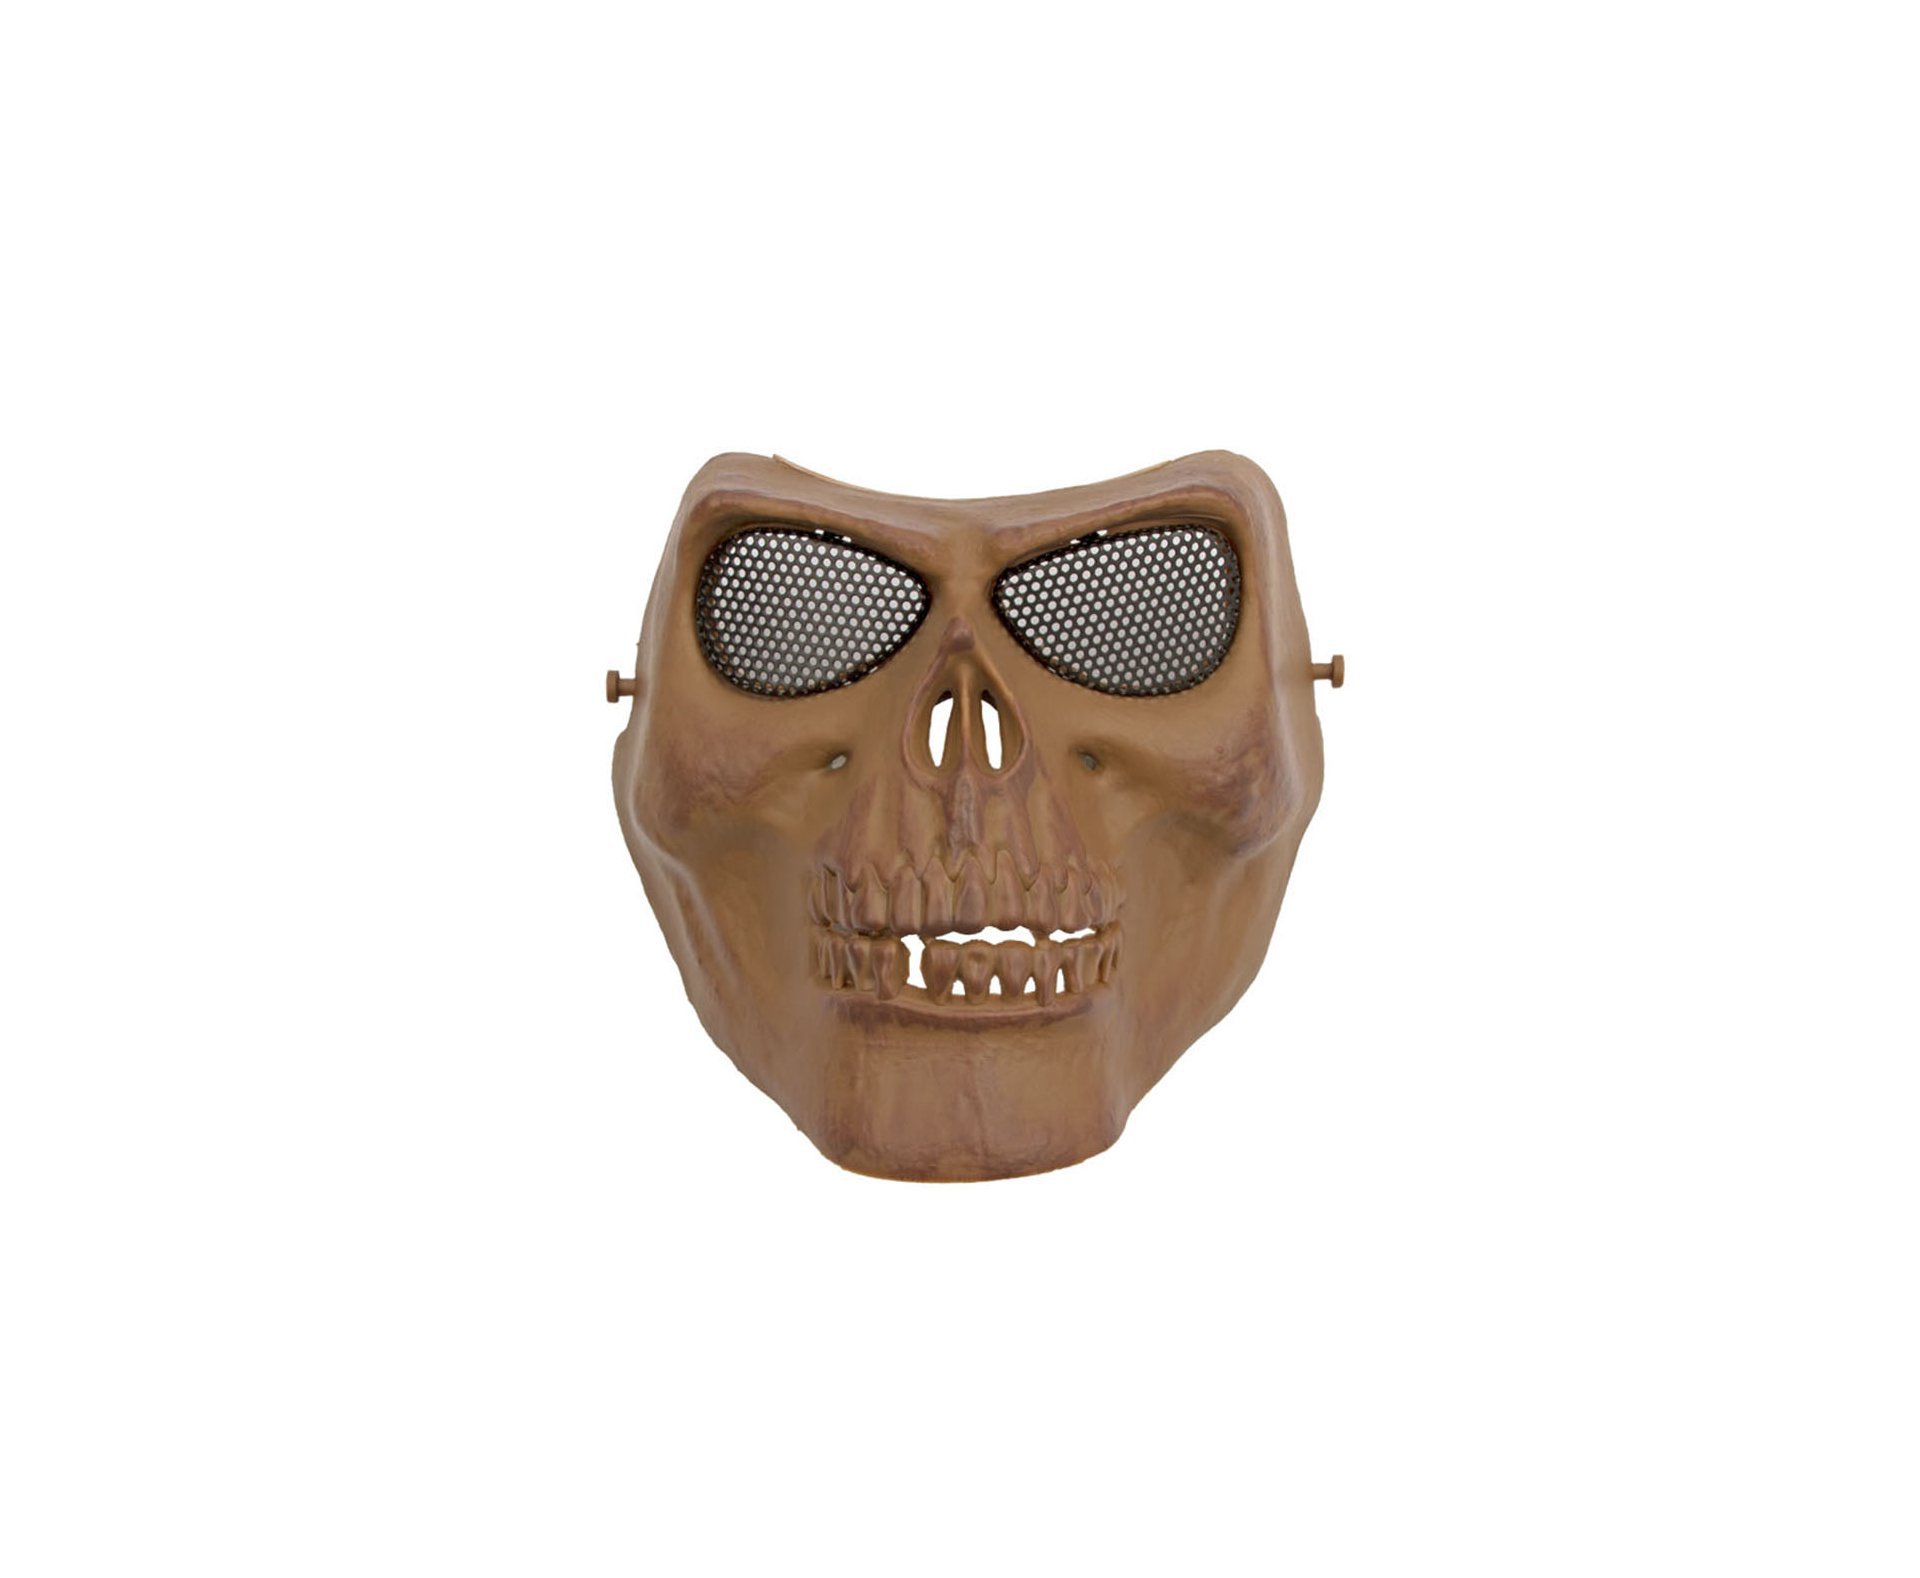 Mascara Tatica De Caveira Em Abs C/proteção De Tela Em Metal - Tan